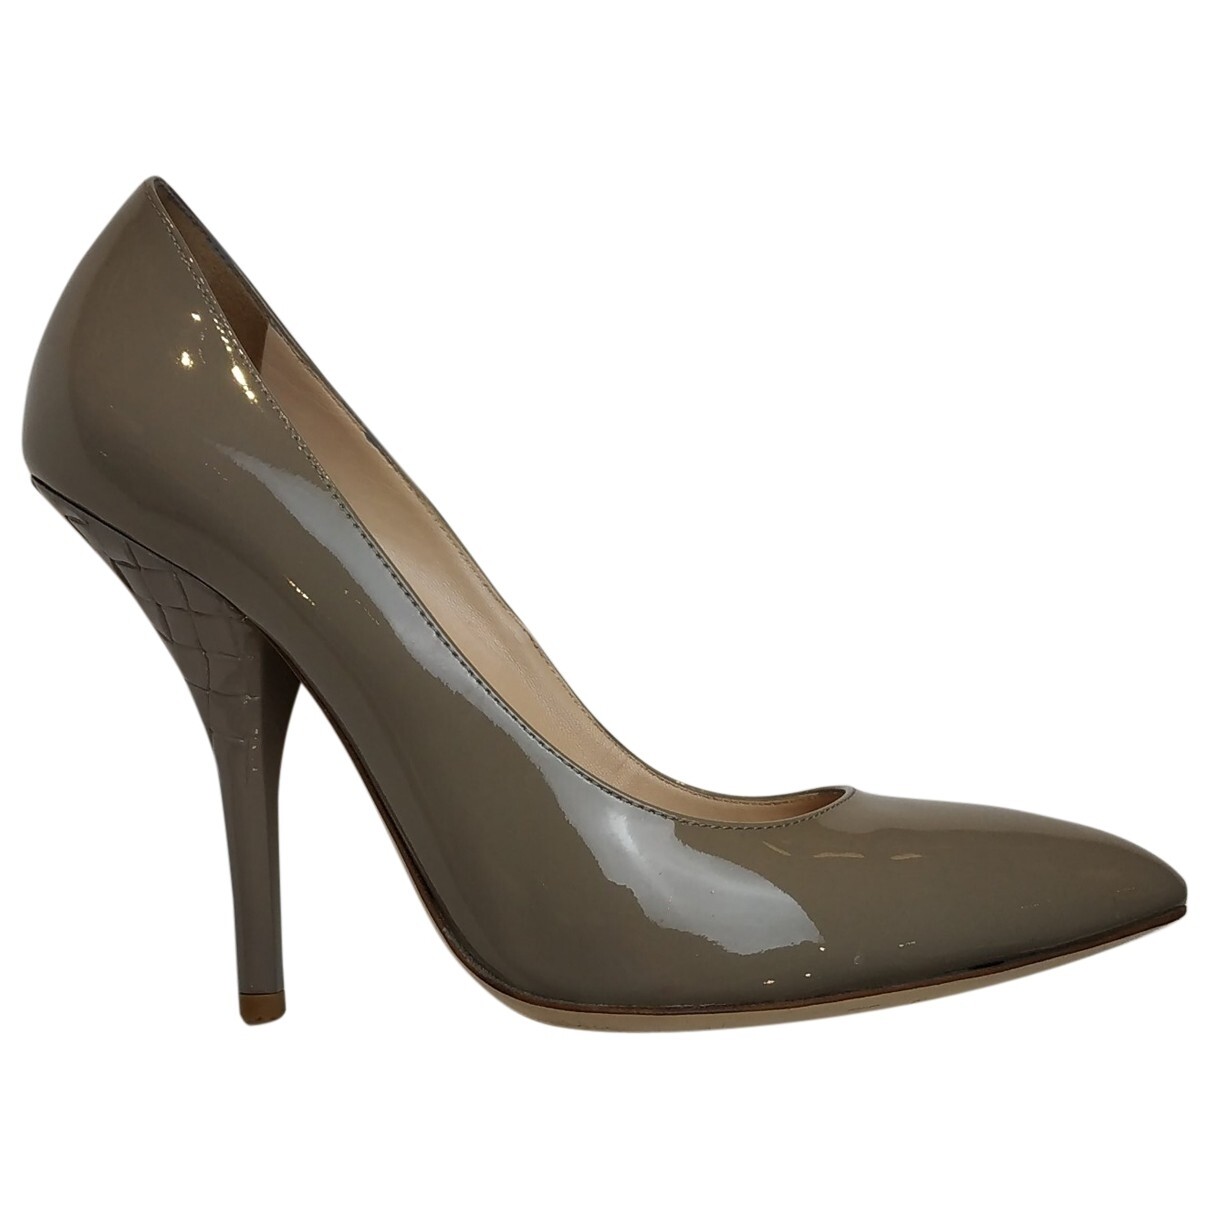 Bottega Veneta heels, size 38